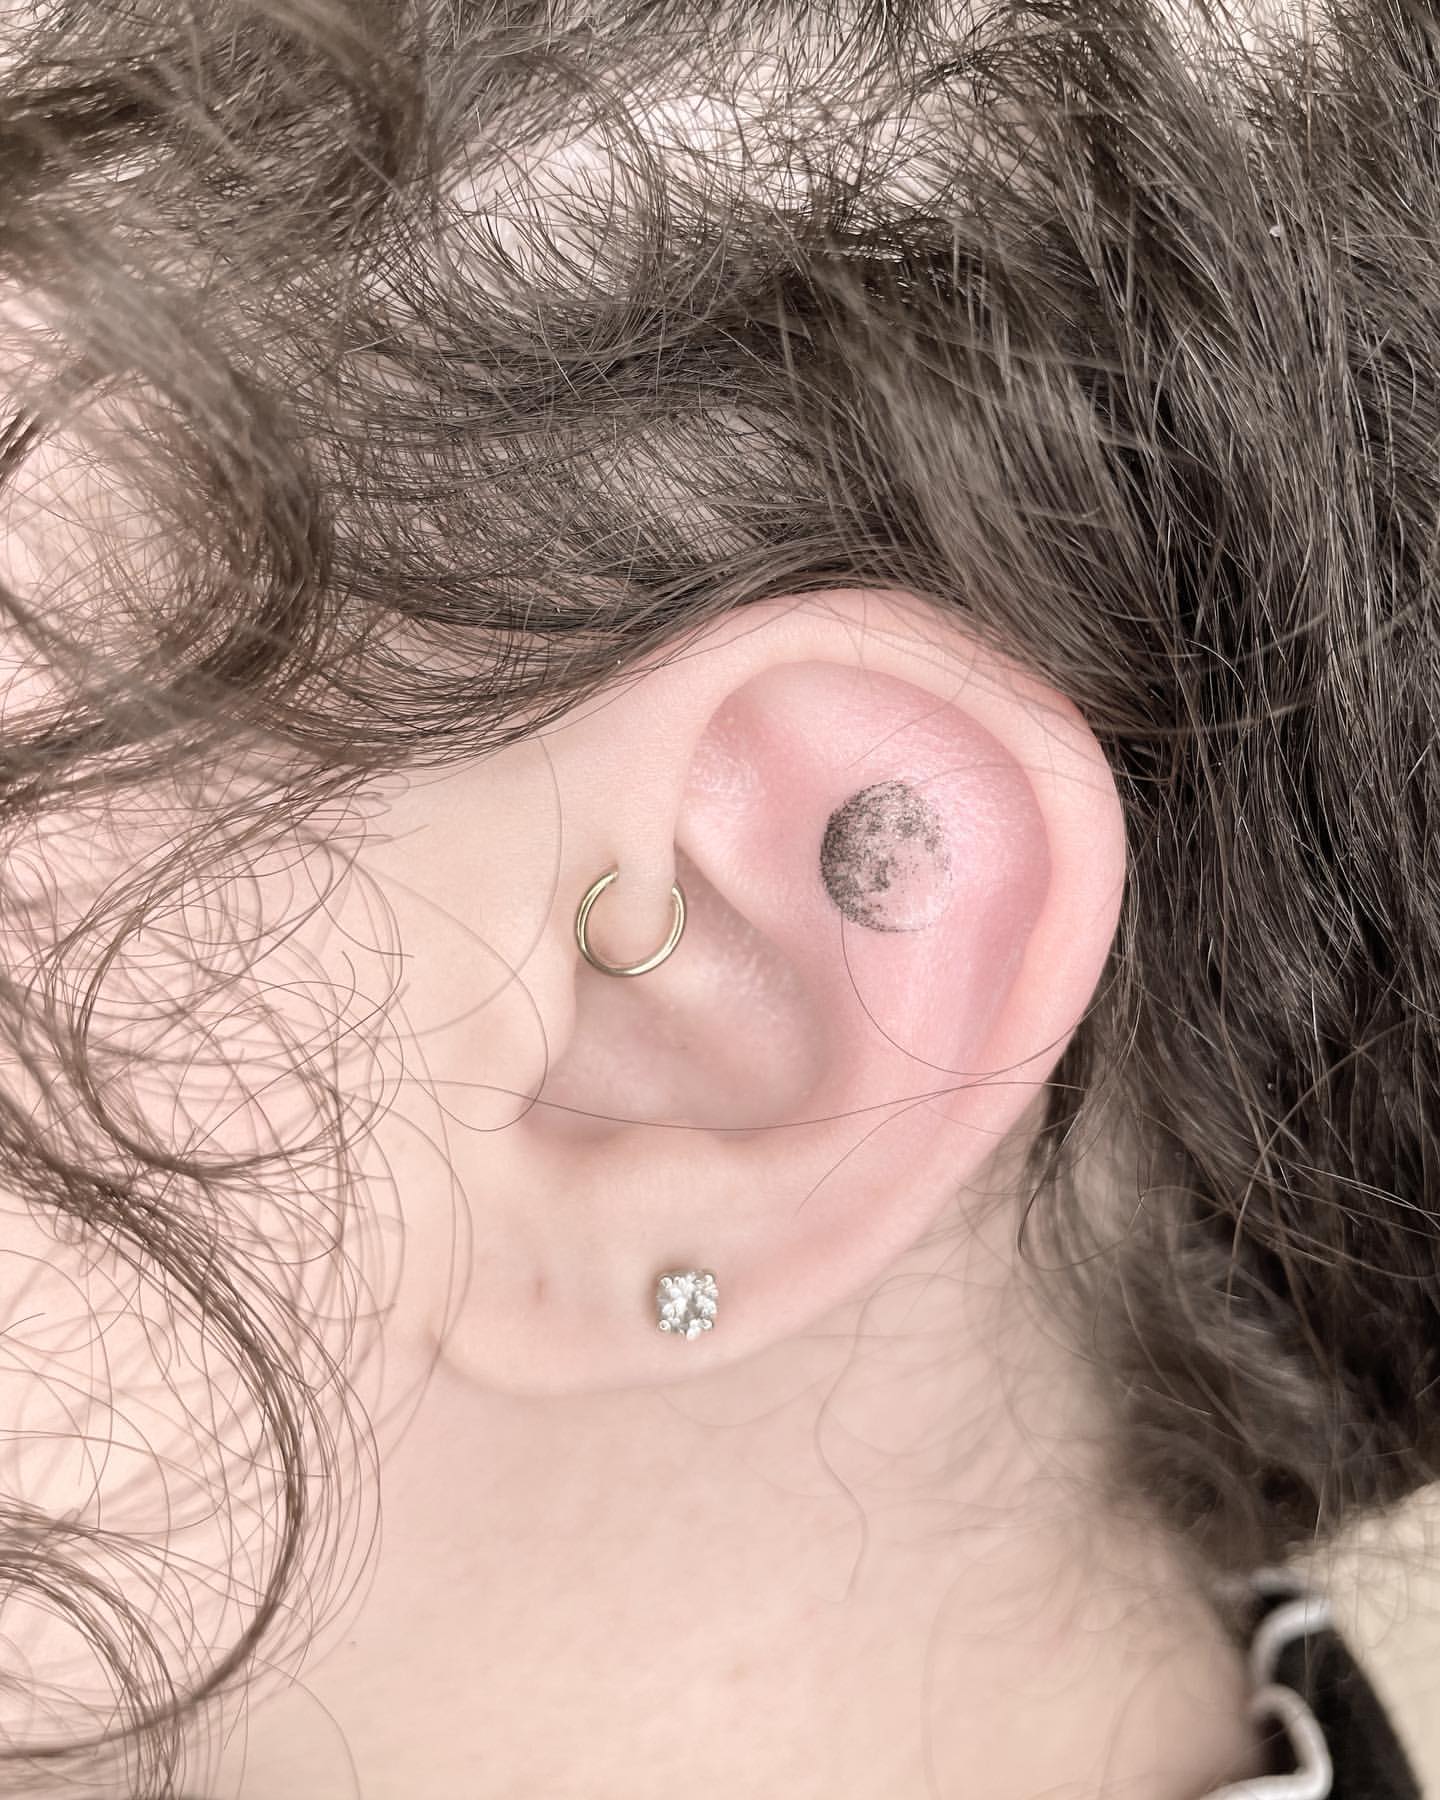 Ear Tattoo Ideas 5